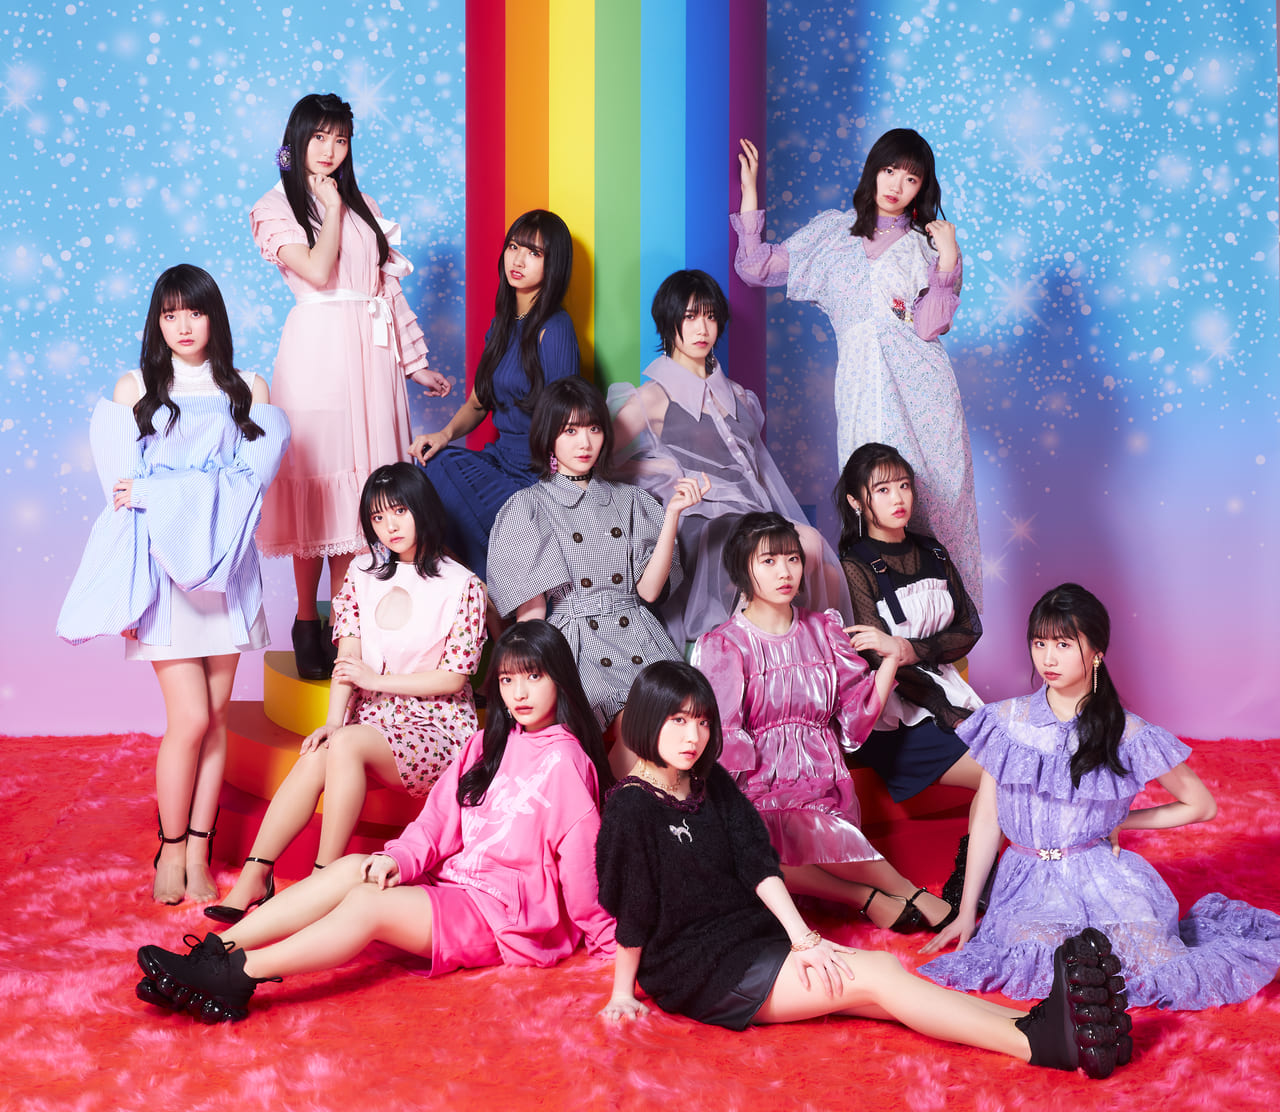 虹のコンキスタドール 最新アルバム レインボウグラビティ について熱く語る Harajuku Pop Web